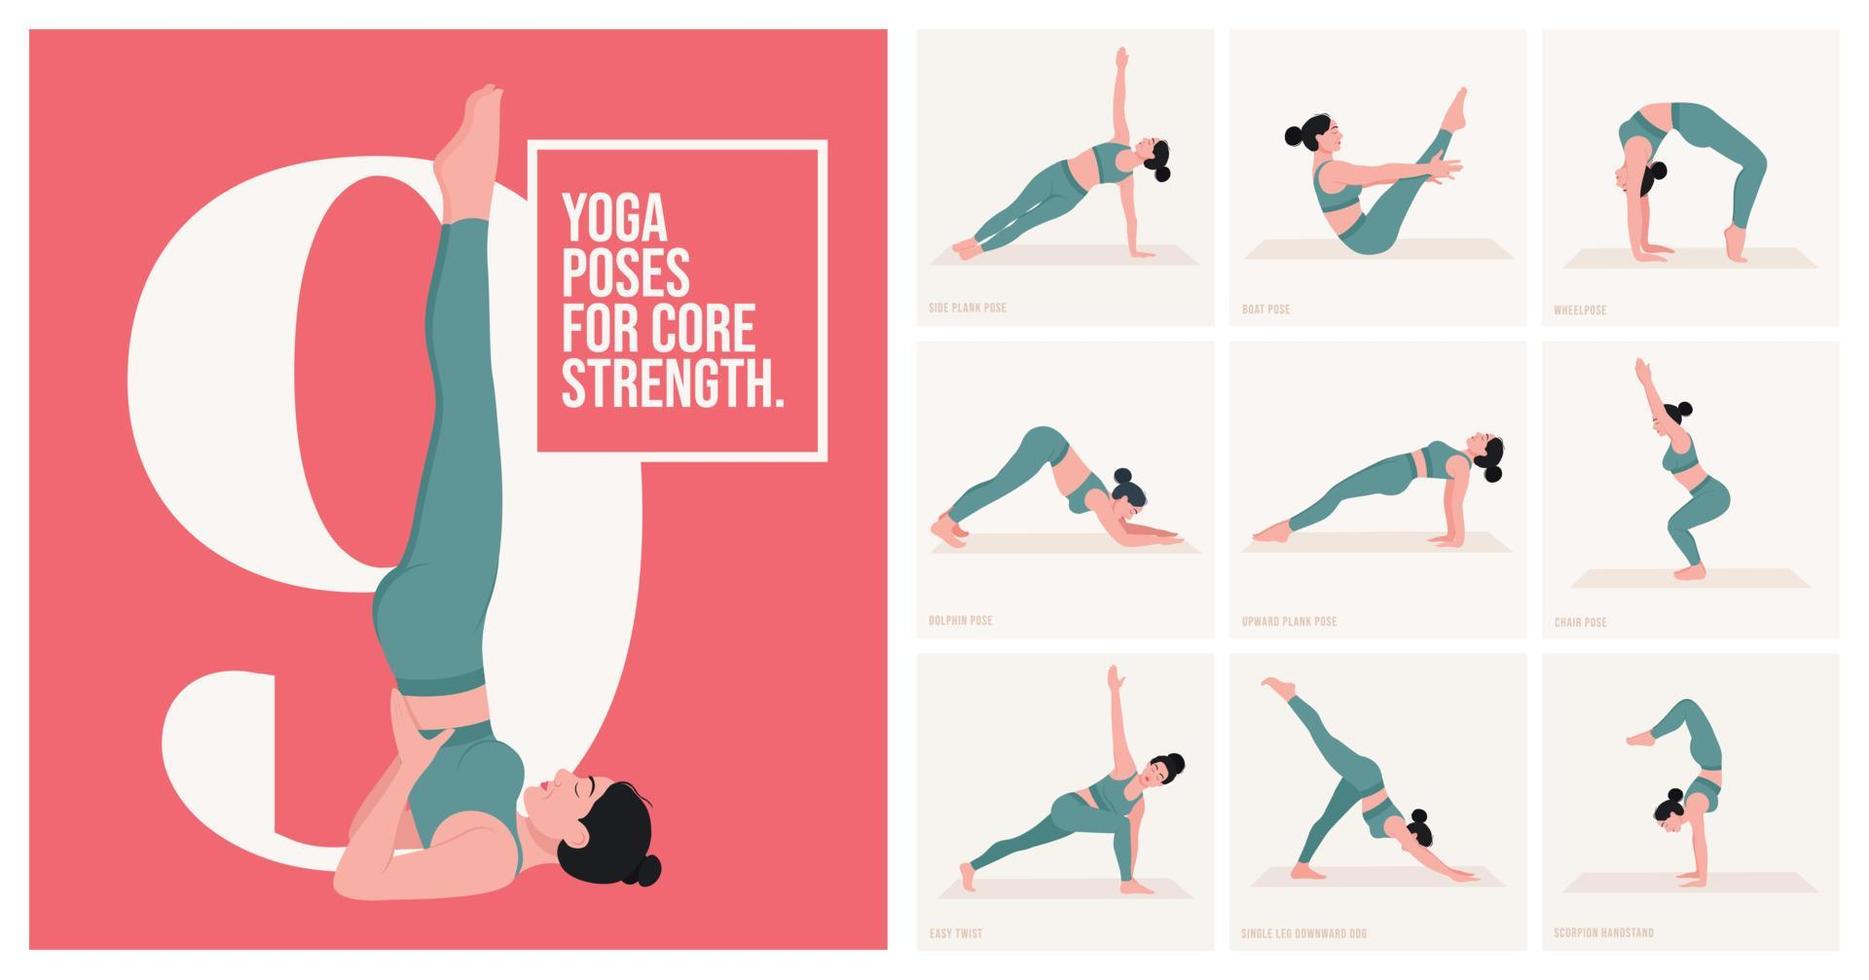 posturas de yoga para la fuerza central. mujer joven practicando pose de yoga. mujer entrenamiento fitness, aeróbicos y ejercicios. ilustración vectorial vector